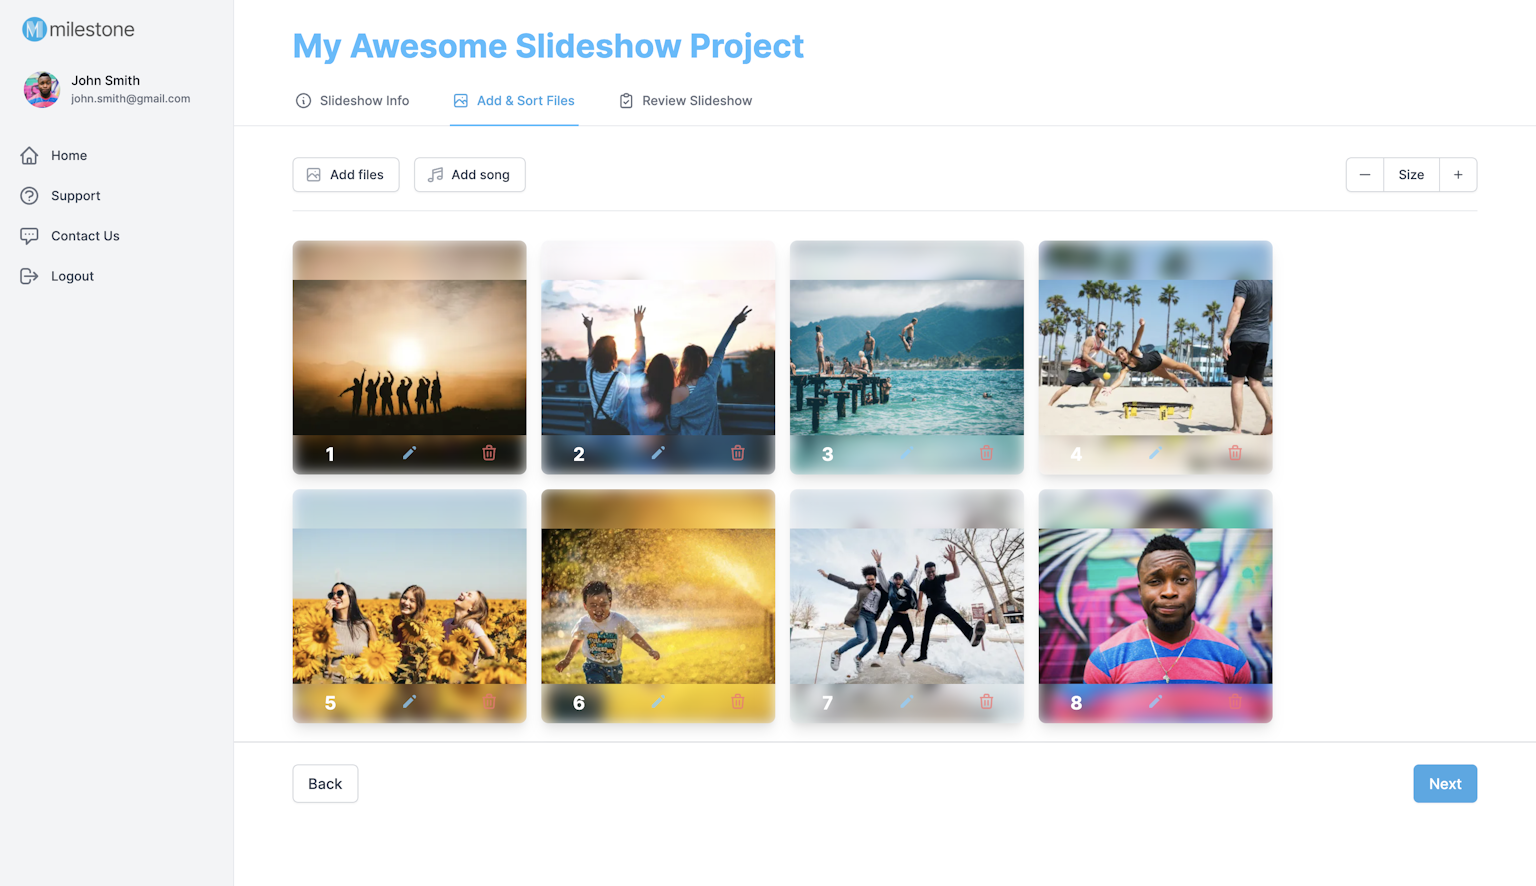 Screenshot of Milestone Slideshows app